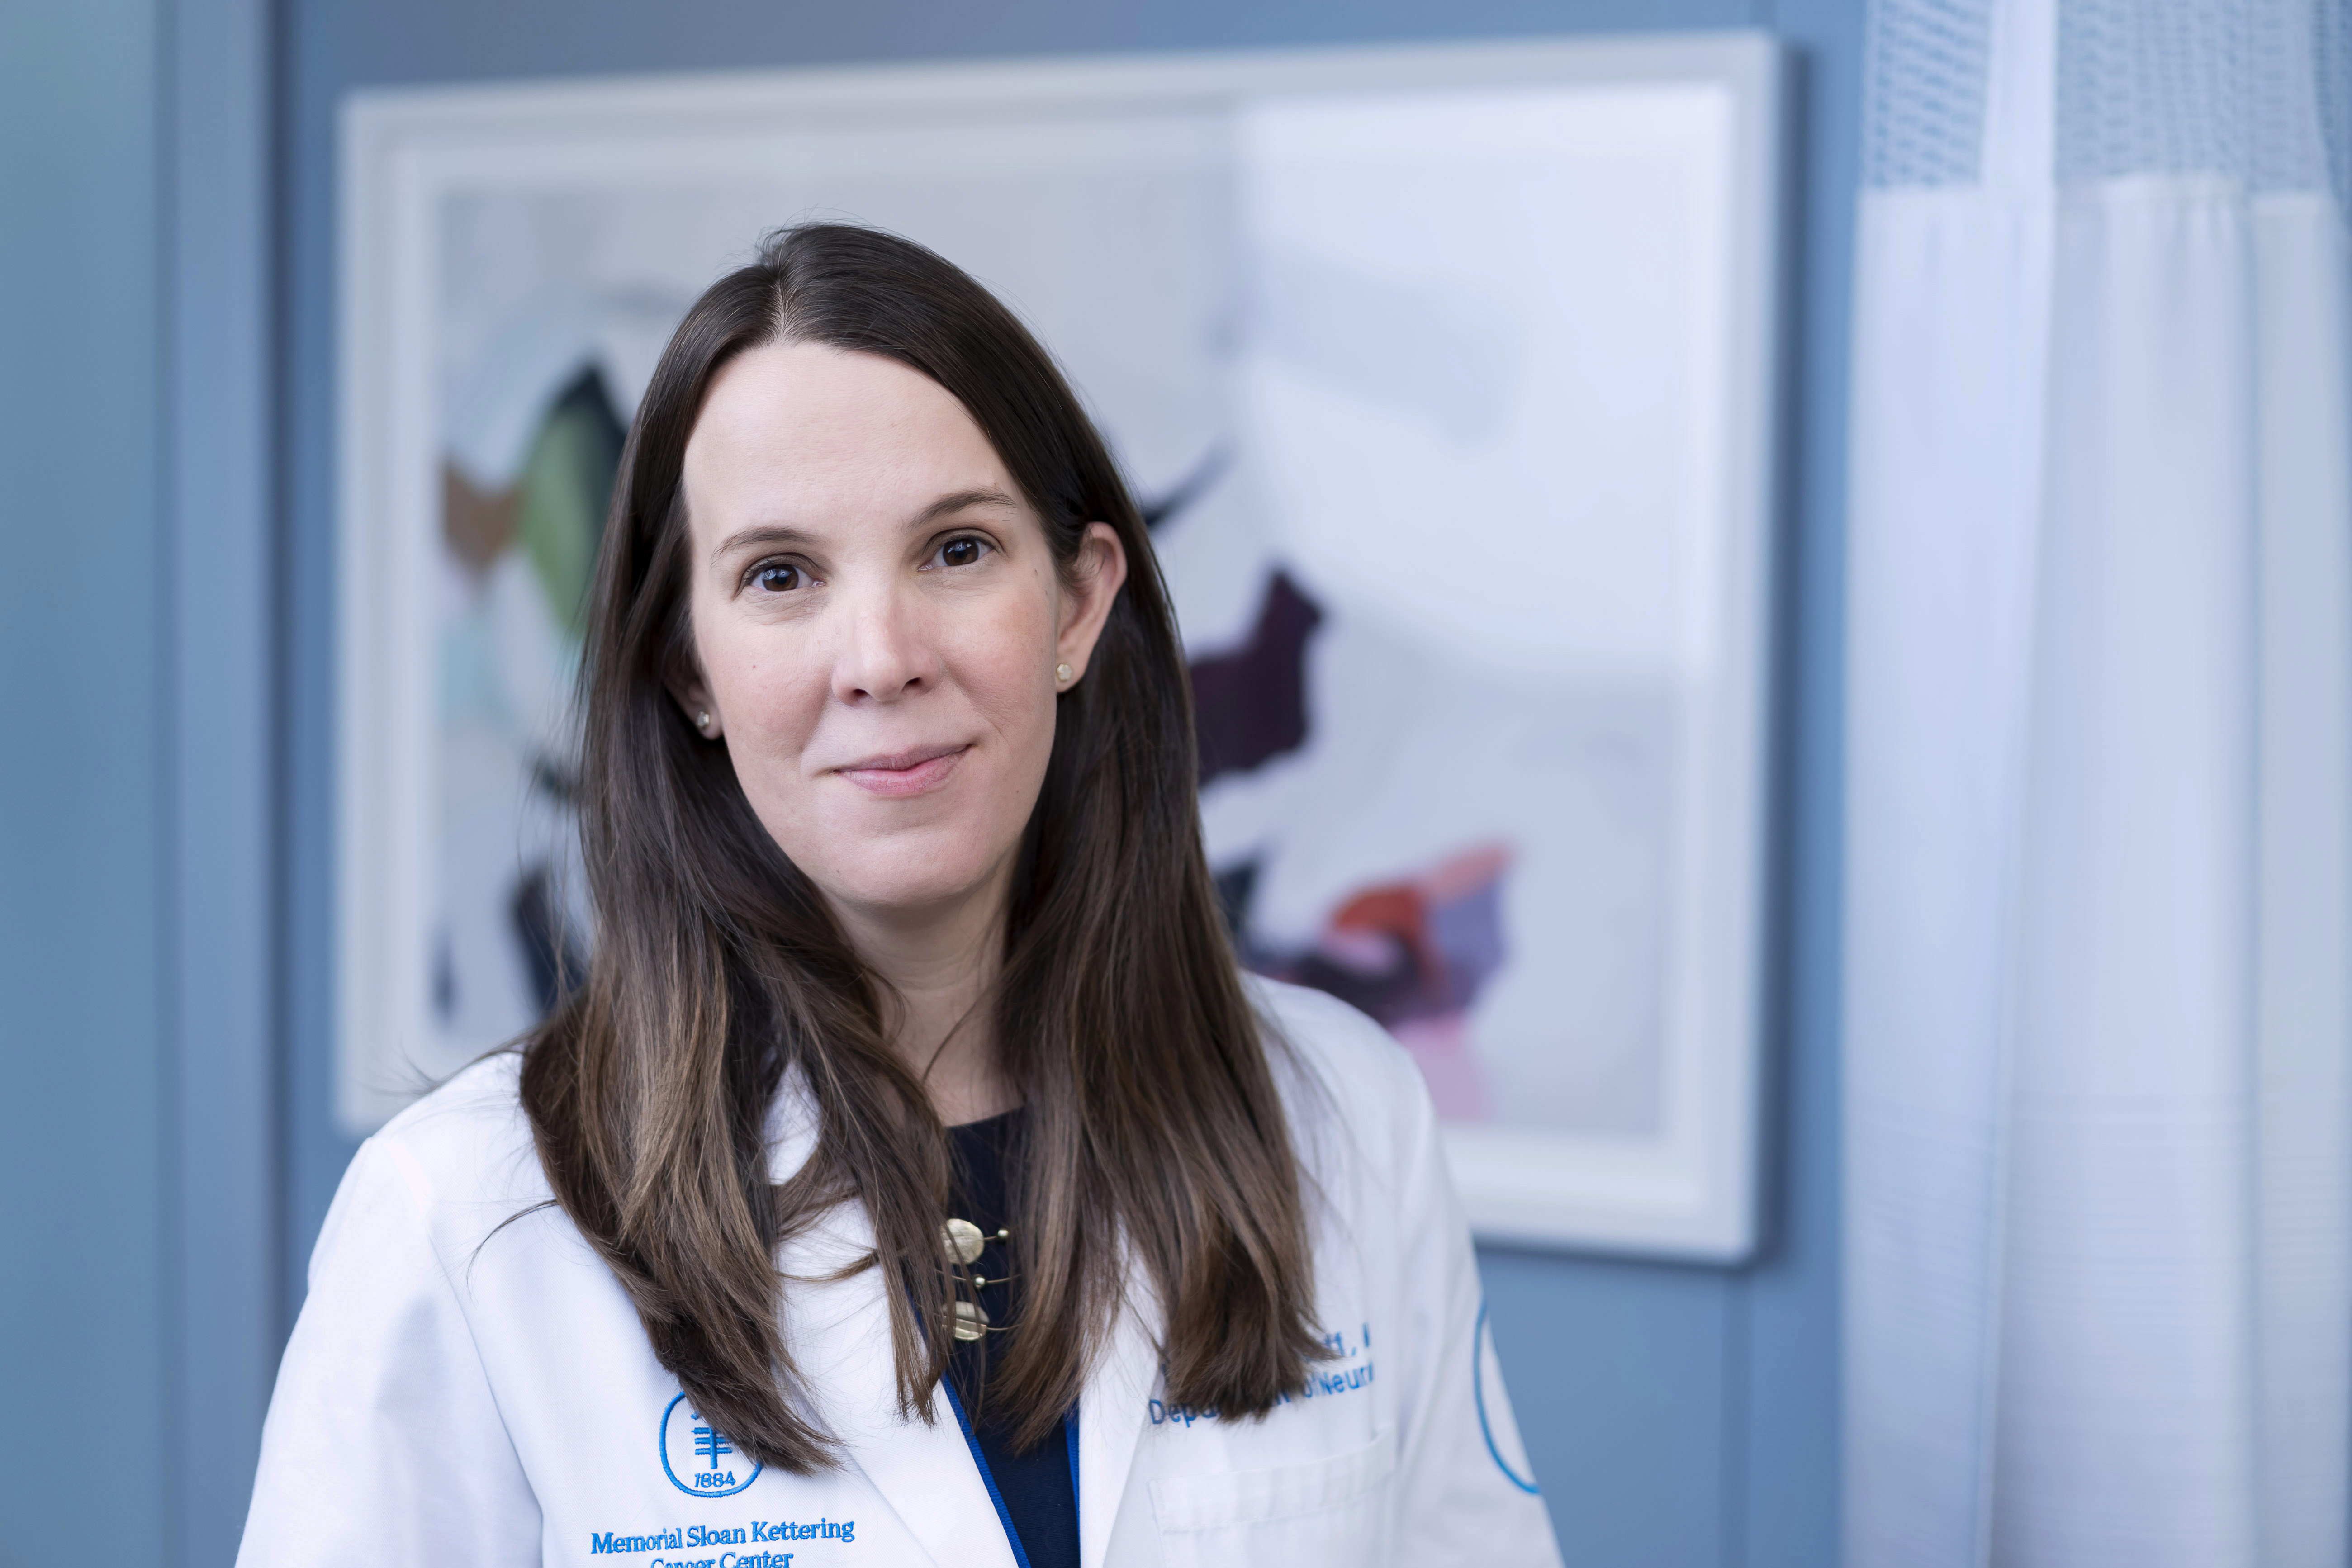 Memorial Sloan Kettering neuro-oncologist Lauren Schaff